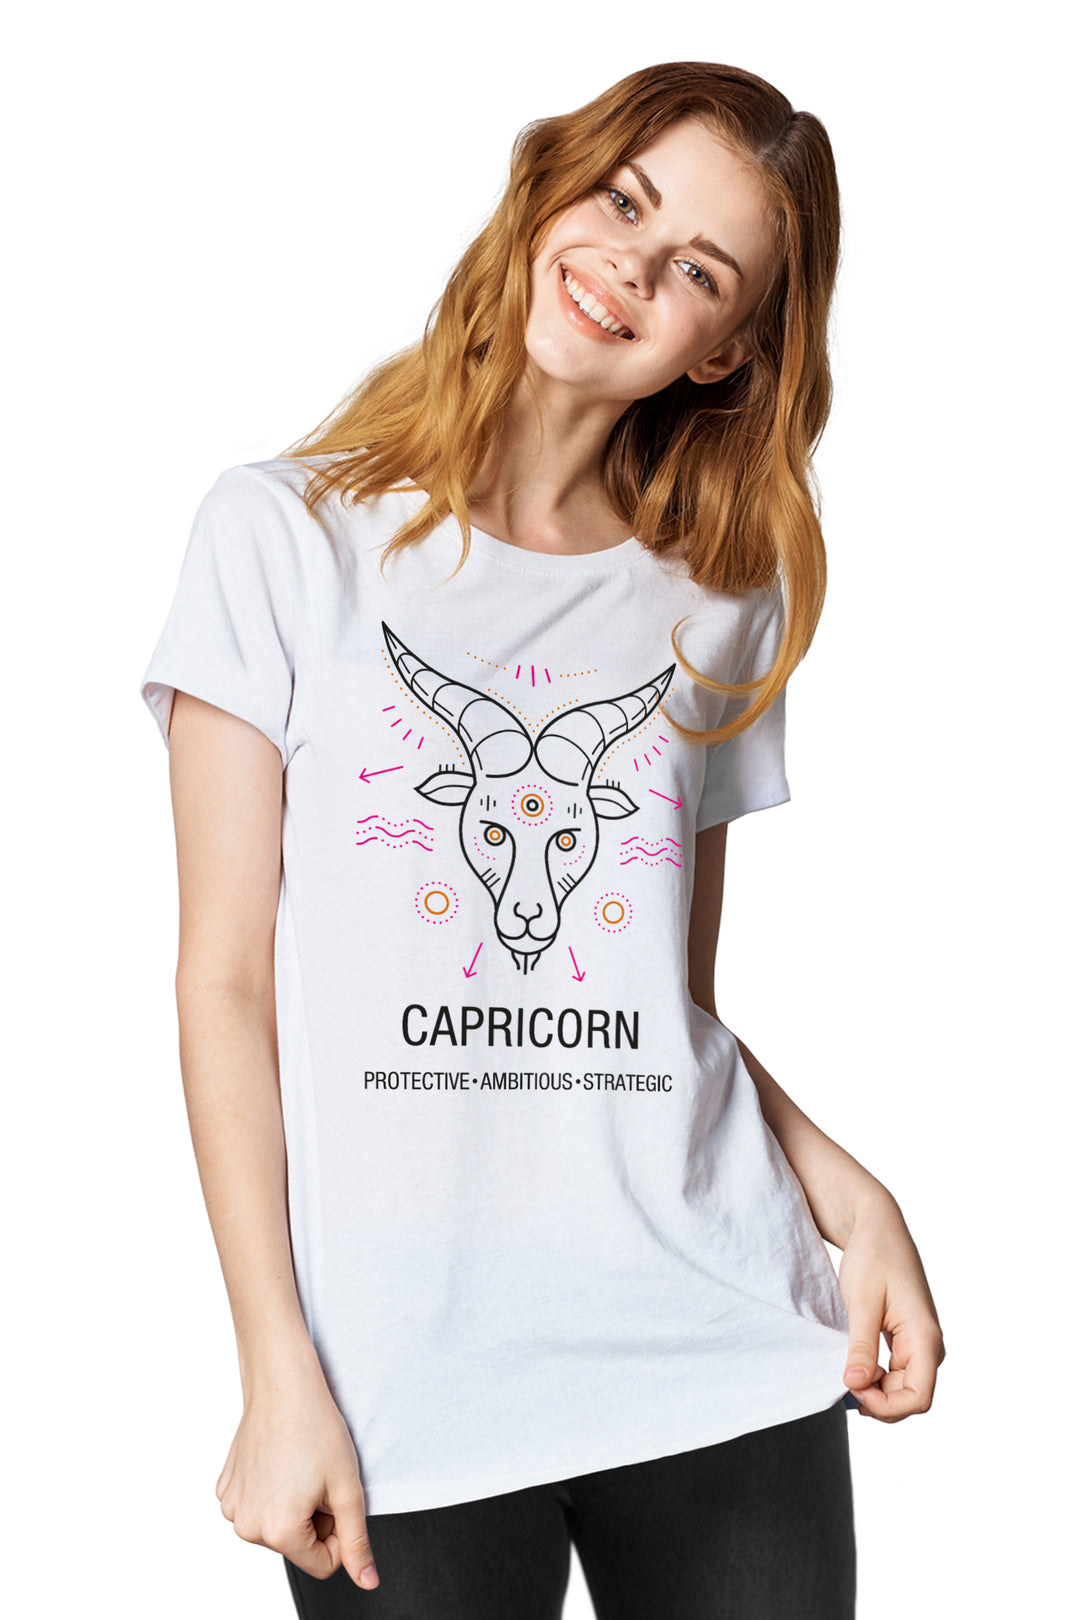 FflirtyGo Capricorn Sign Printed T-Shirt - FflirtyGo